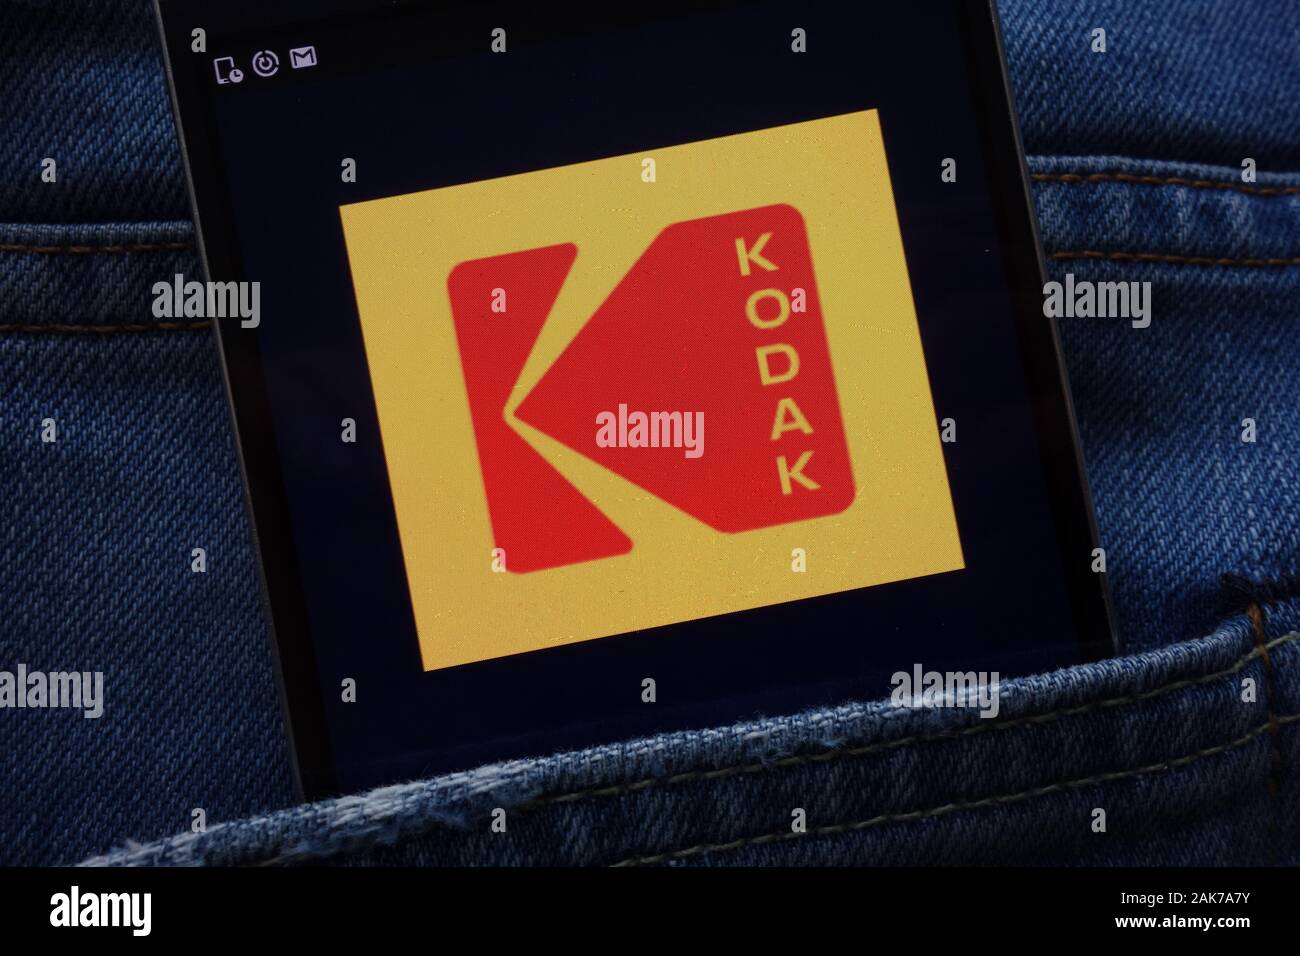 Eastman Kodak Company website displayed on smartphone hidden in jeans pocket Stock Photo